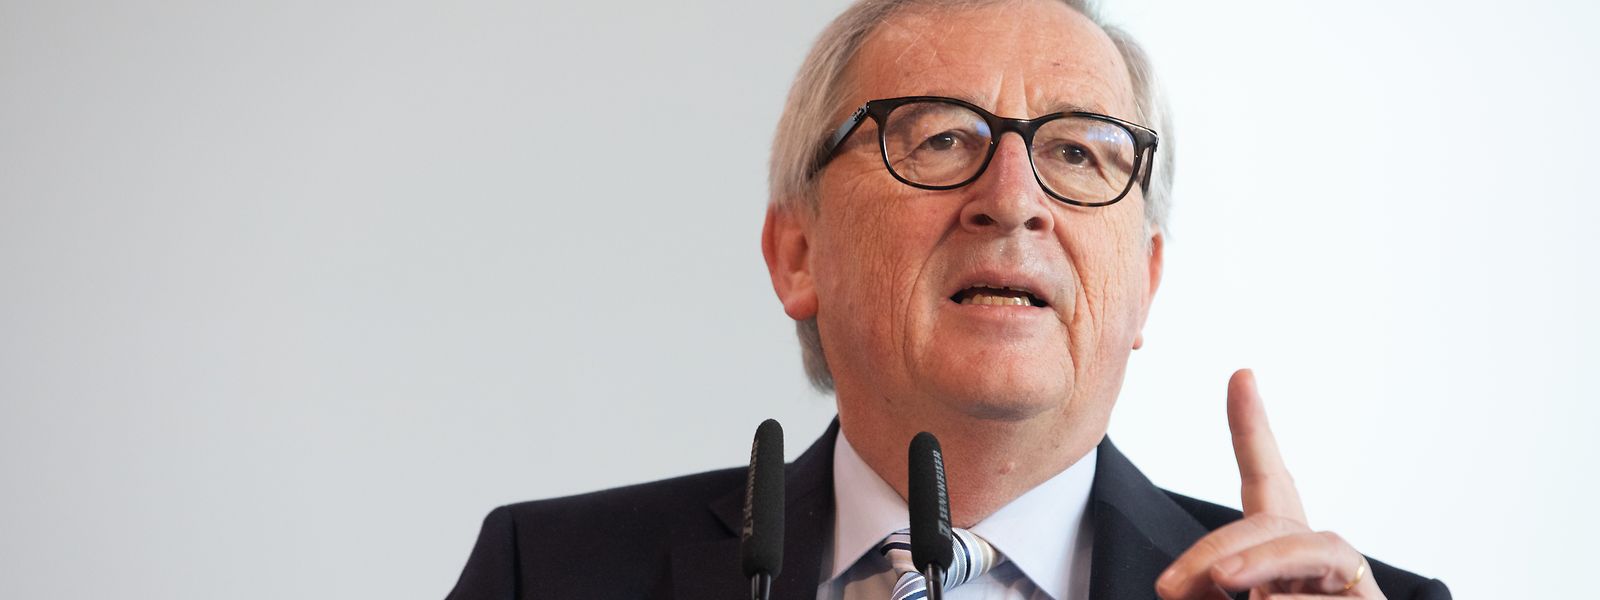 "Rassismus und Ausgrenzung zu bekämpfen, ist eine tägliche Herausforderung", mahnt Jean-Claude Juncker.